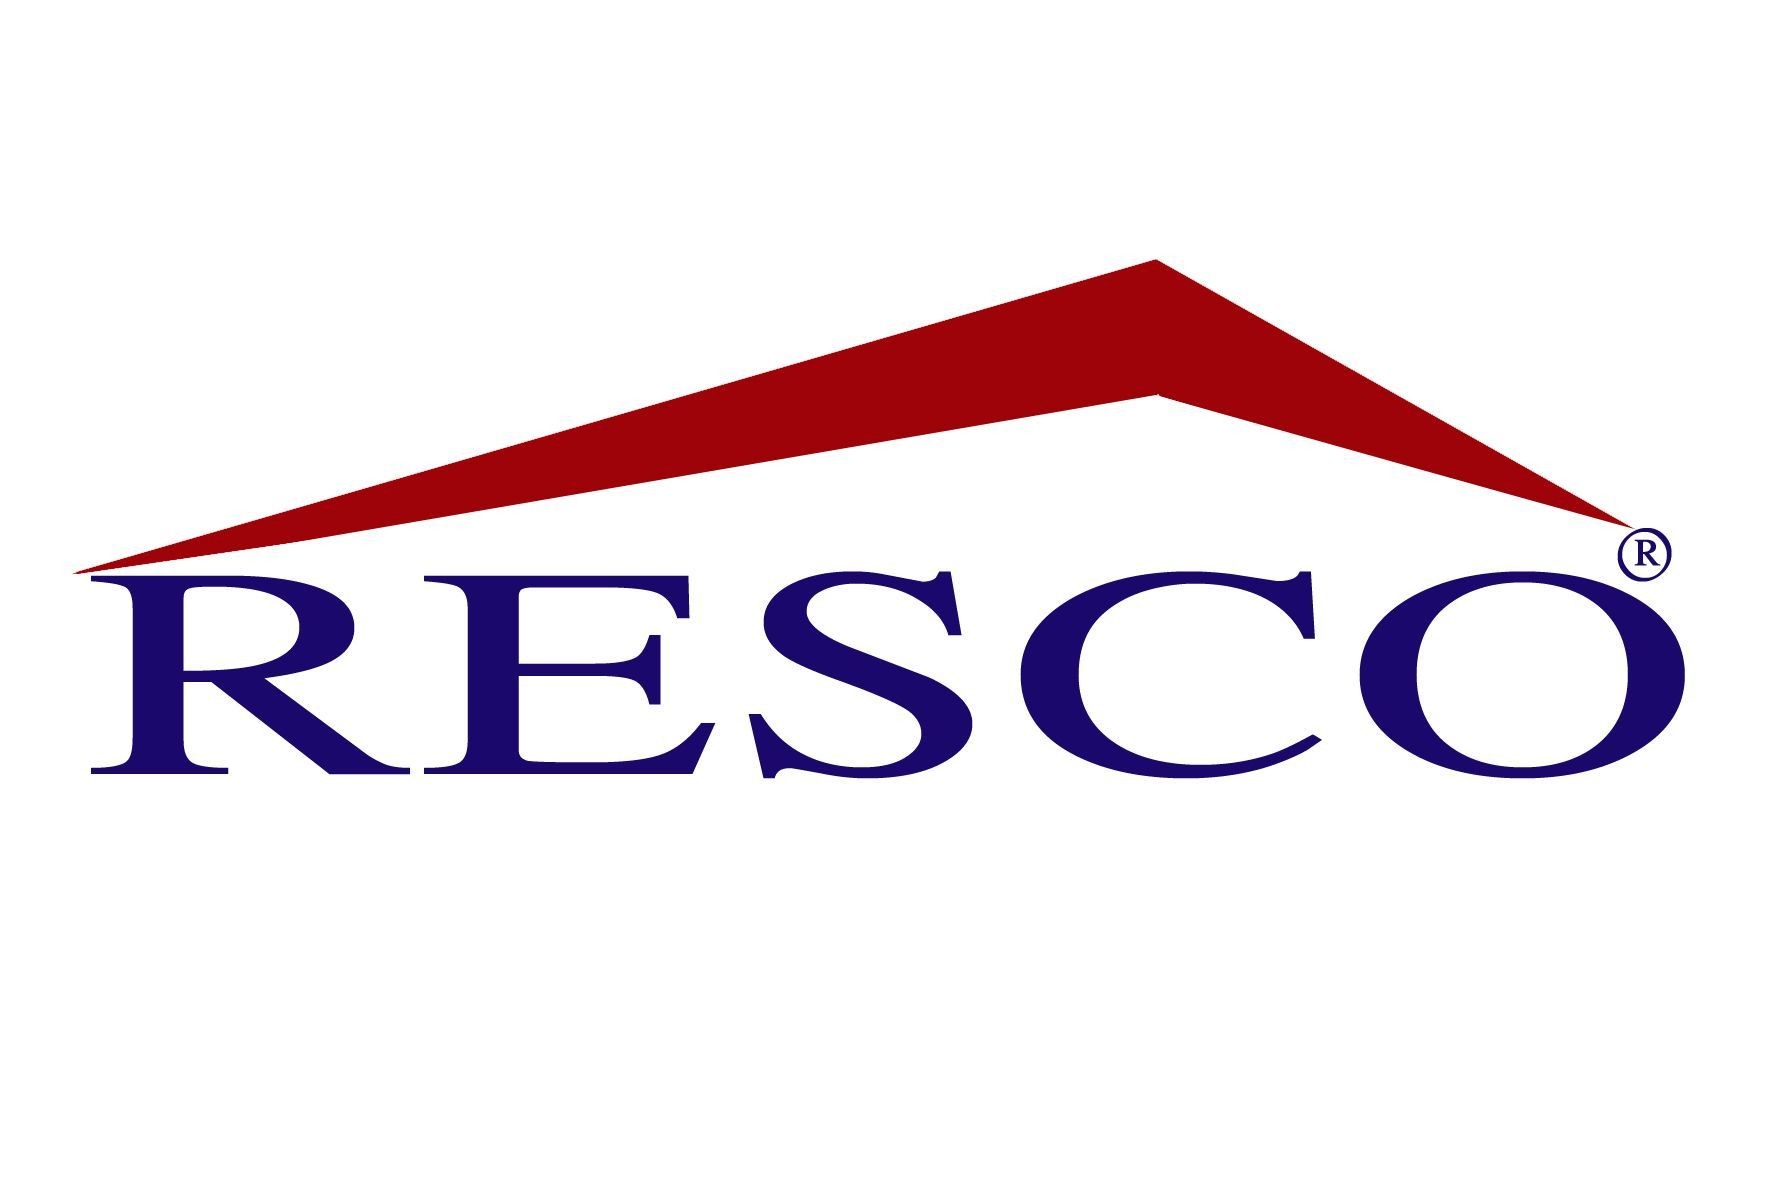 



Logo của Tổng Công ty Địa ốc Sài Gòn (RESCO) 

